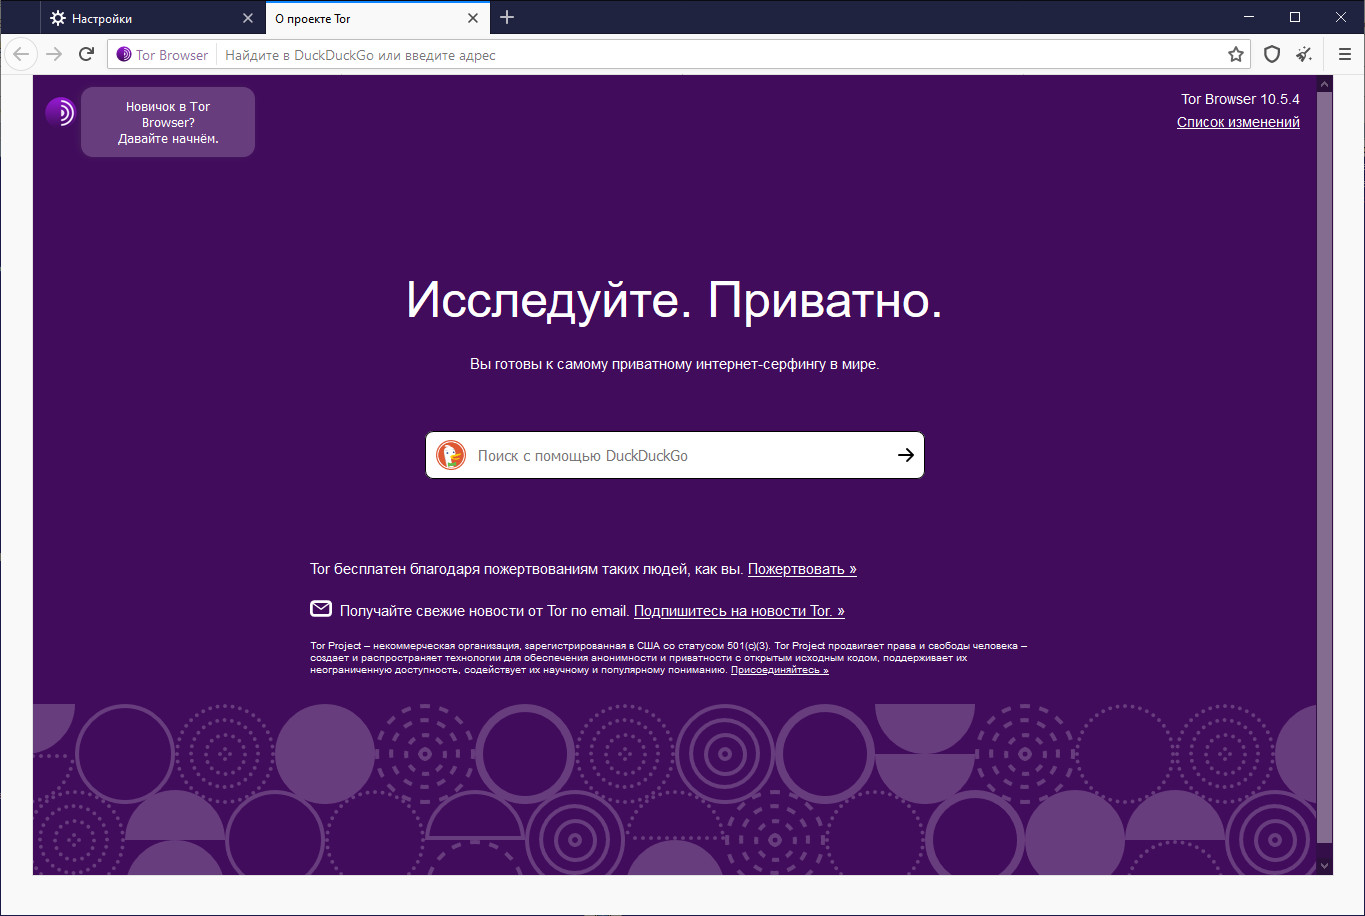 Тор браузер скачать бесплатно торрент для windows 7 mega tor browser with vpn мега